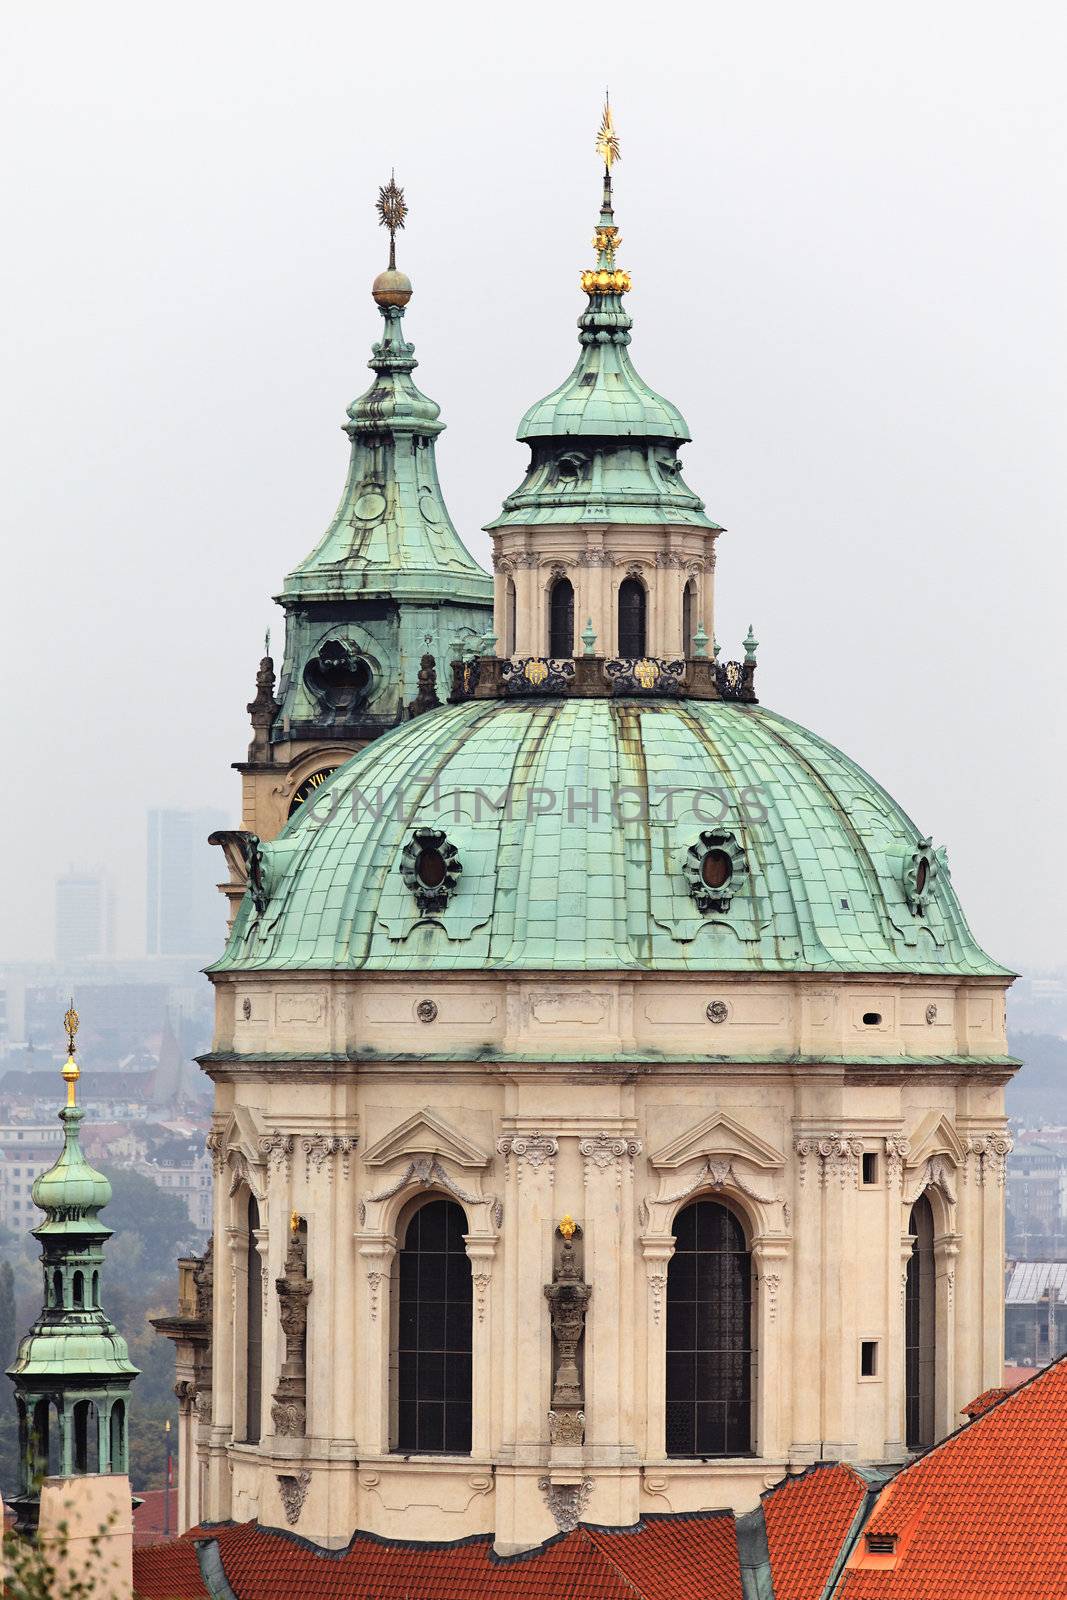 Saint Nicholas church by vwalakte